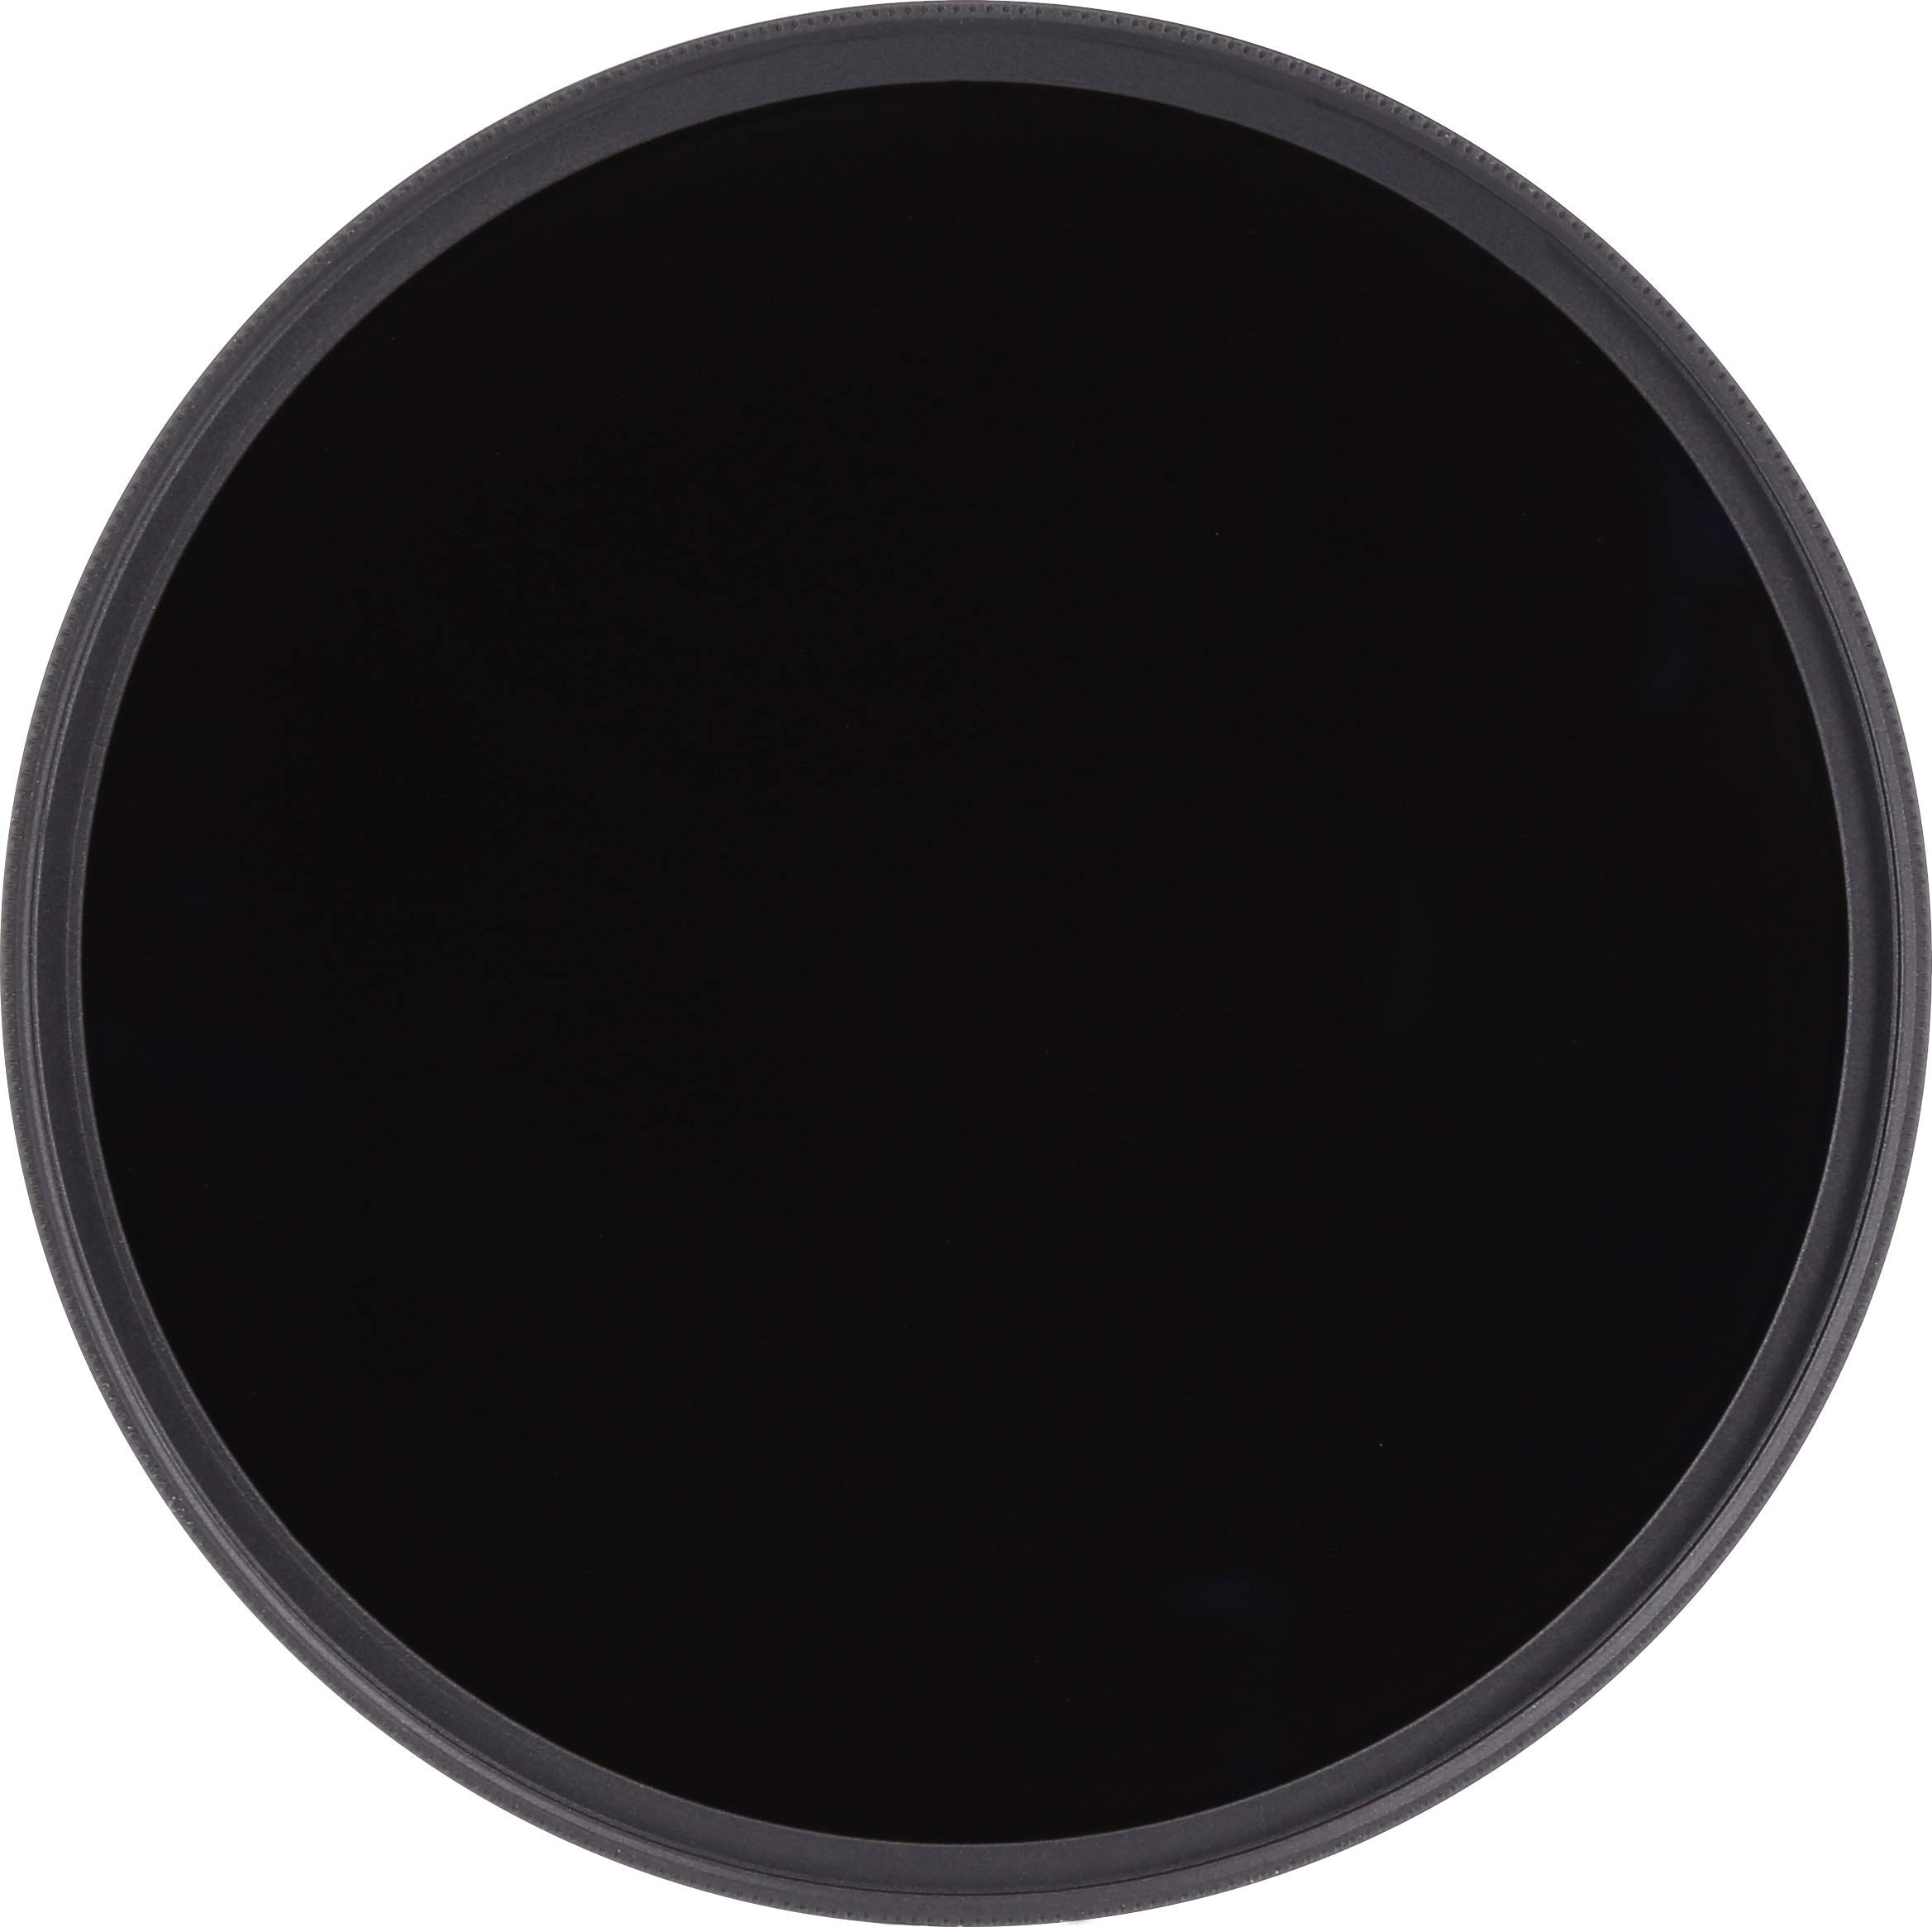 Rollei F:X Pro Rundfilter (82 mm, ND 4000 Filter) Neutraler Graufilter (Neutraldichtefilter) aus Gorilla Glas mit spezieller Beschichtung – ND4000 (12 Stopps/3,6)